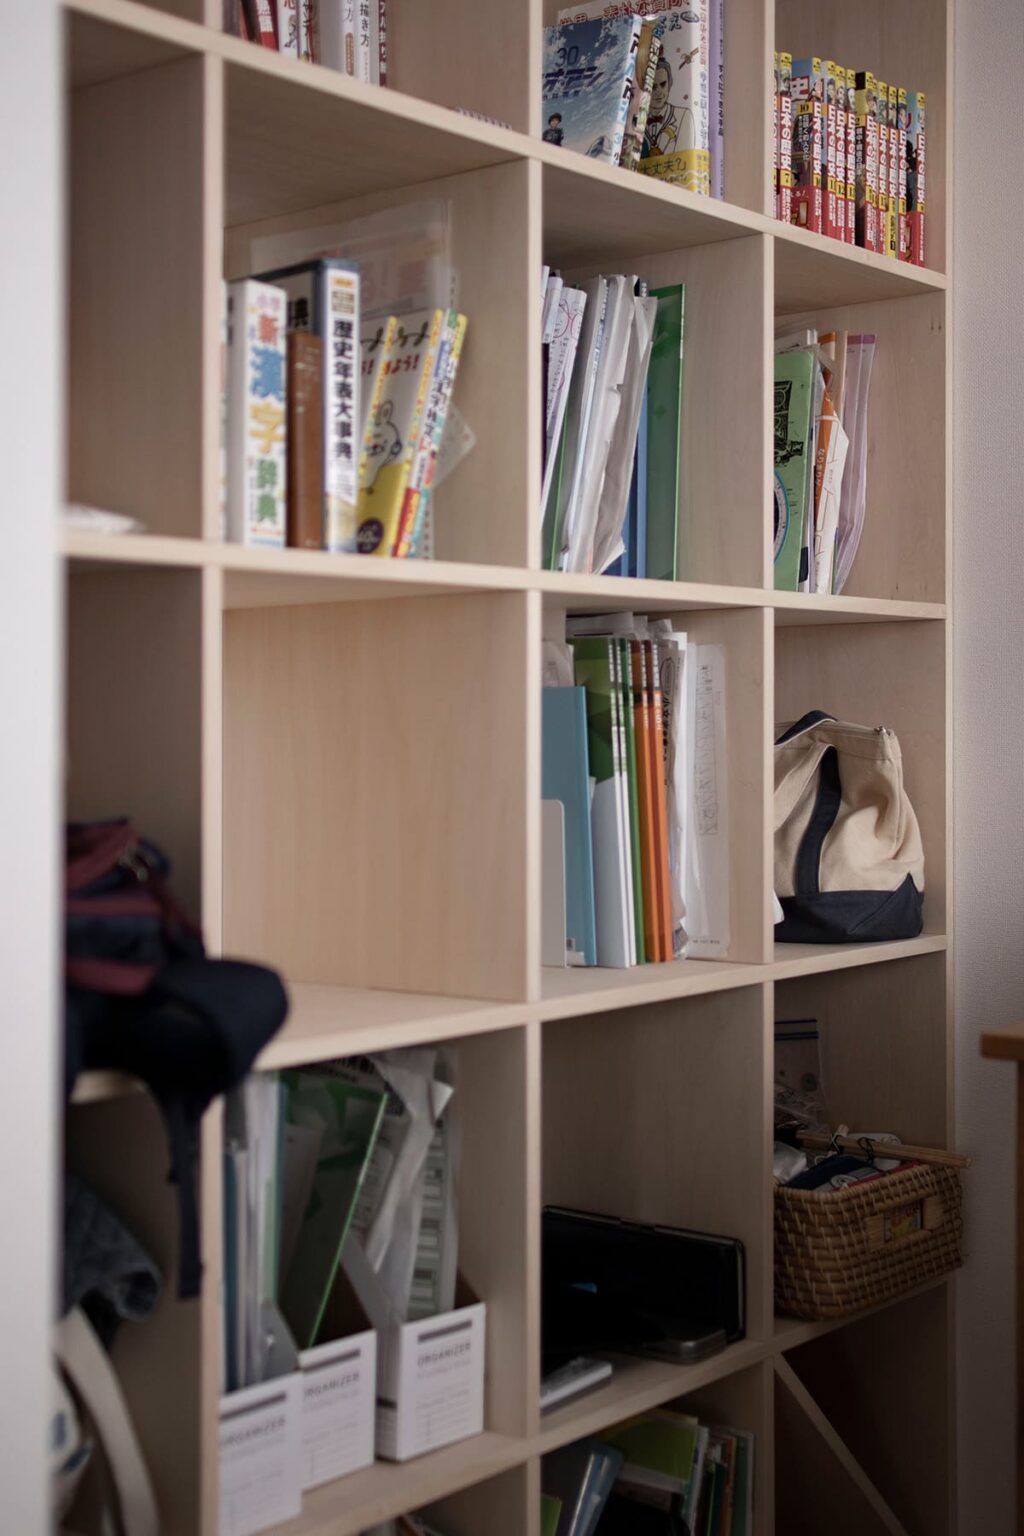 勉強部屋の本棚 - Shelf 壁一面の本棚 奥行350mm - マルゲリータお客様事例